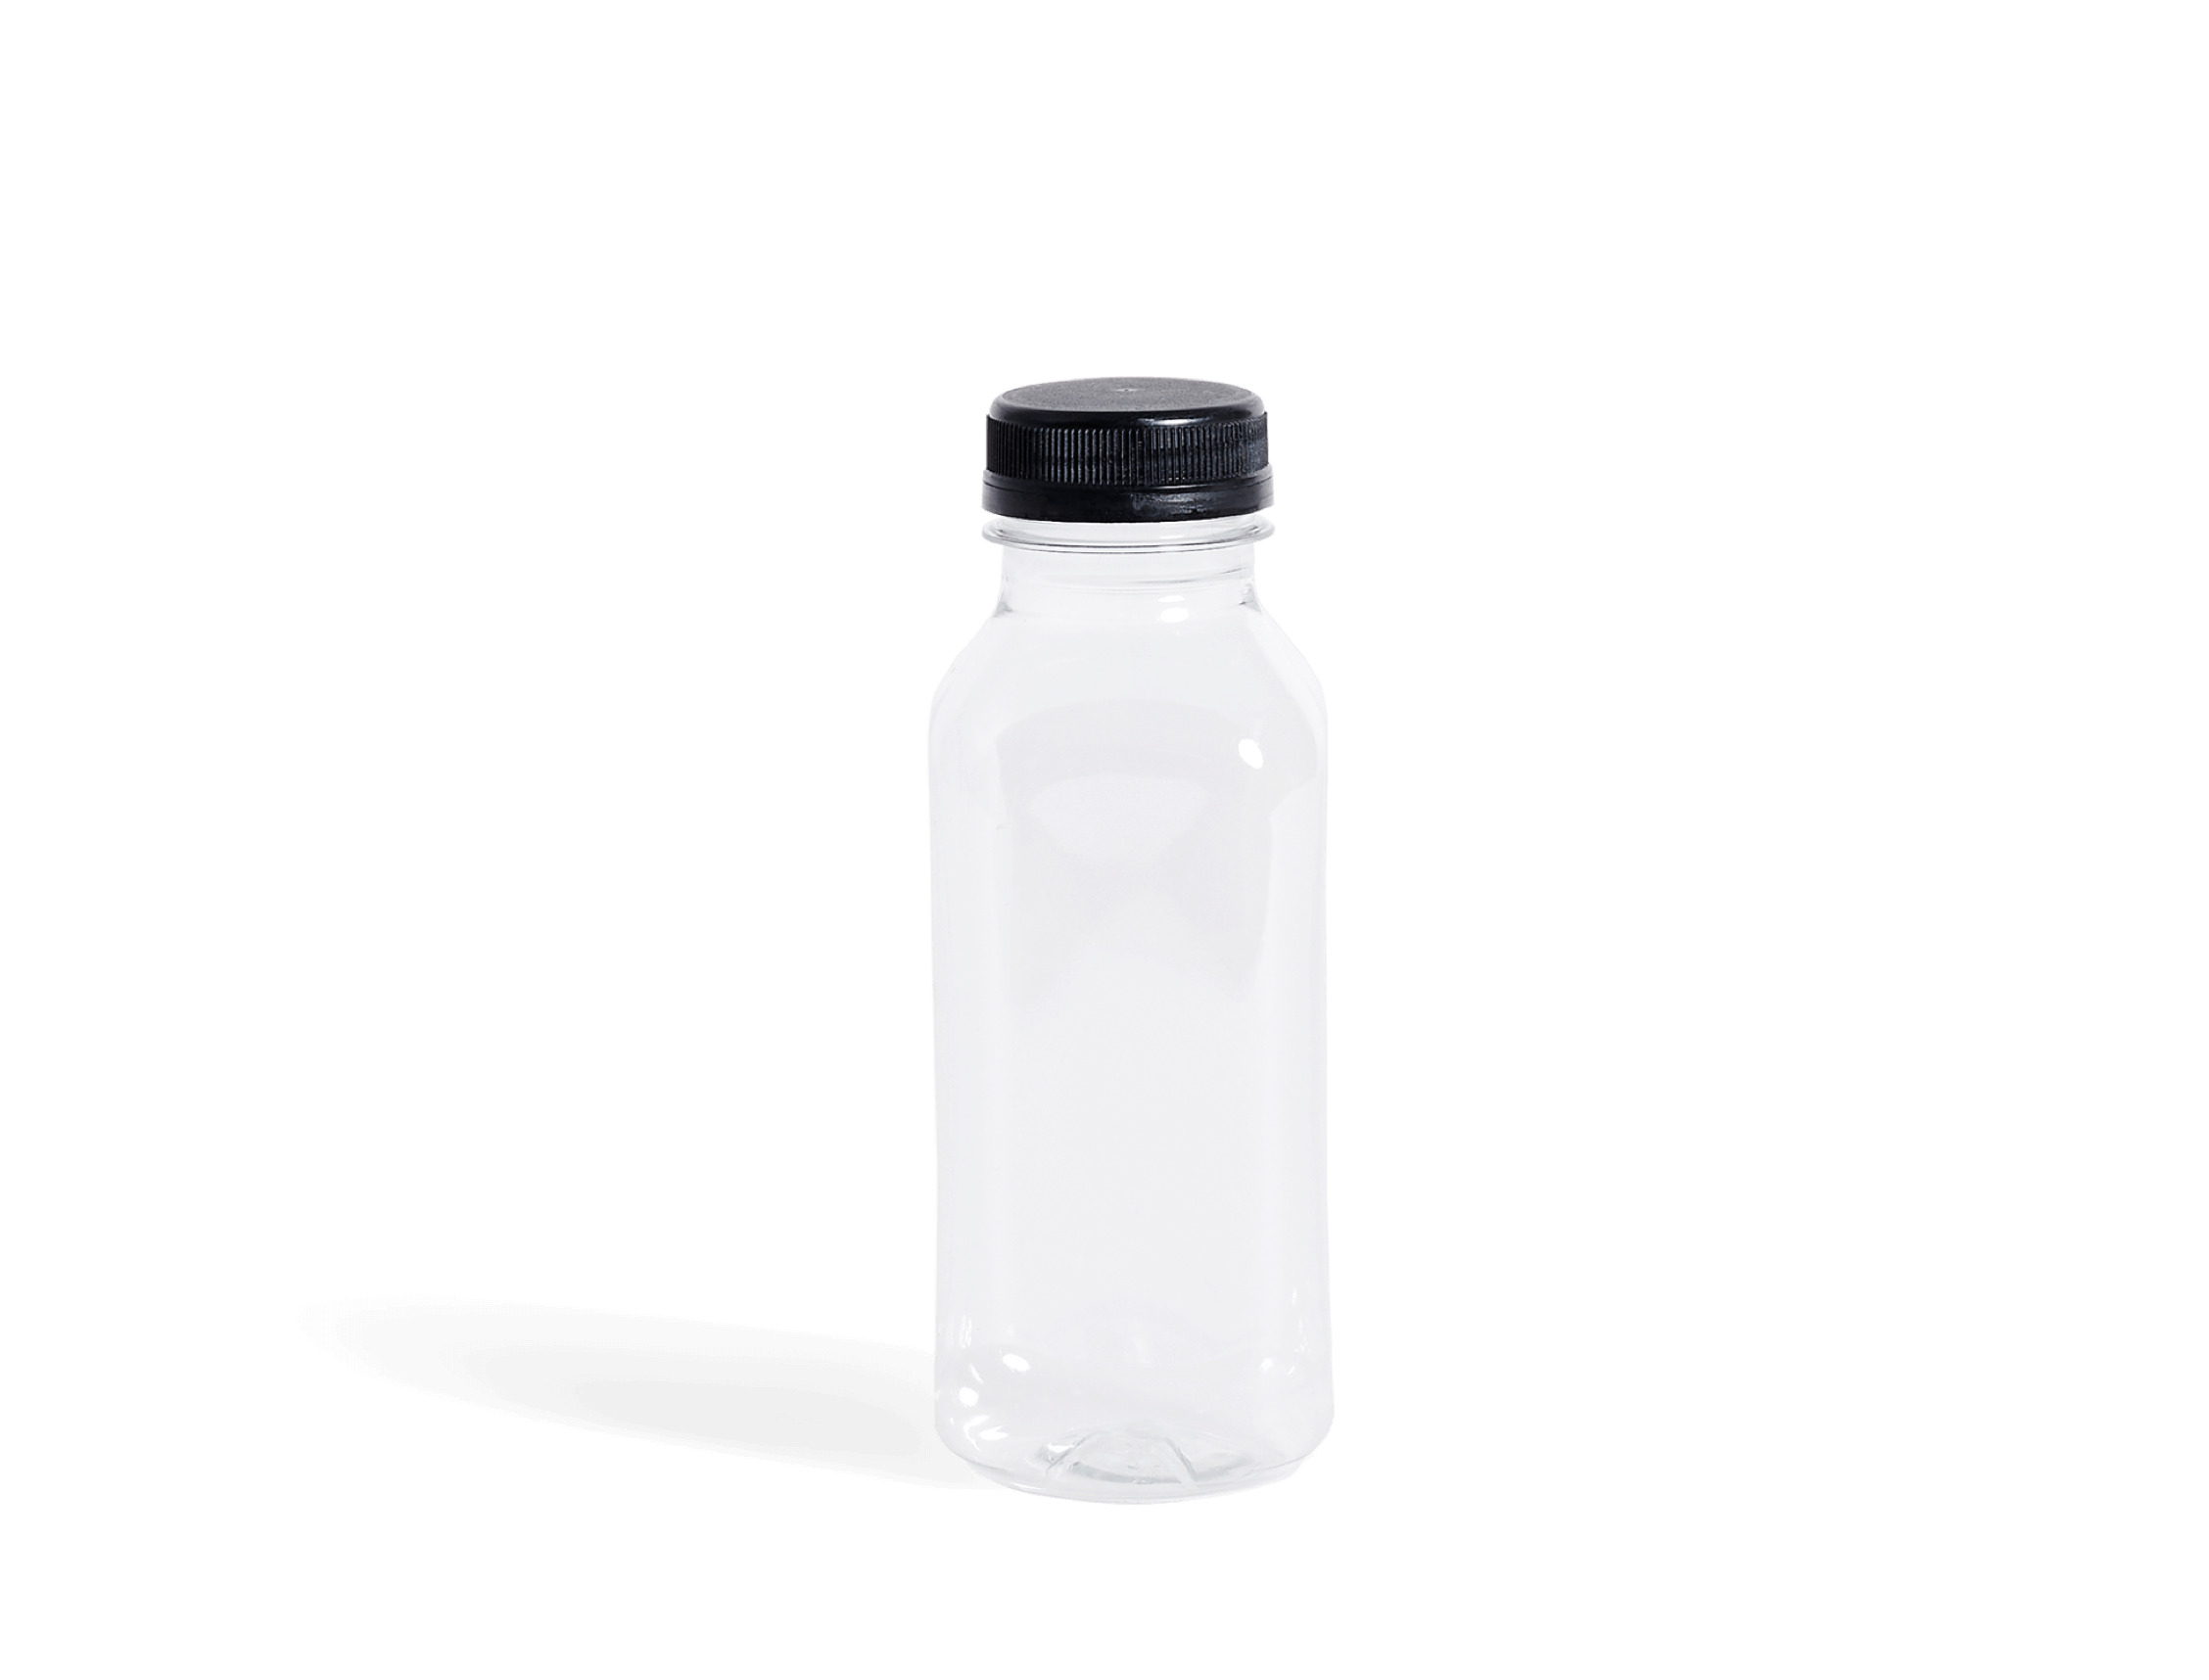 RPET-Flasche aus 100% recycelbaren Material